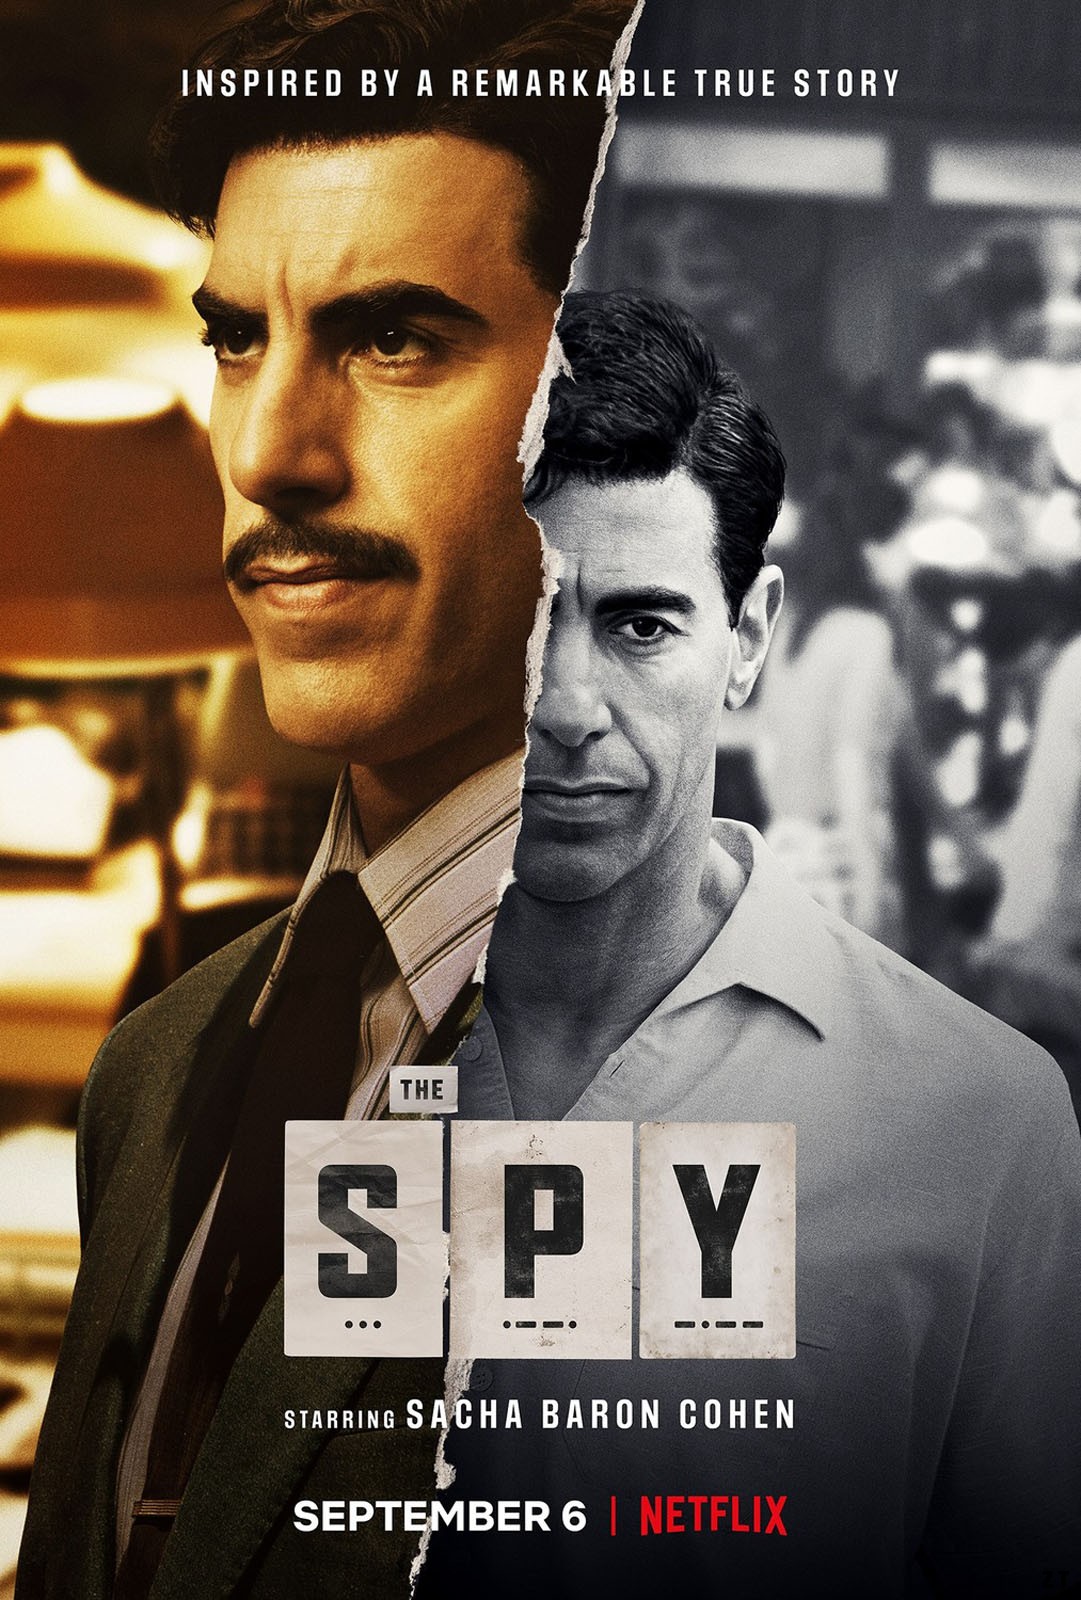 The Spy S01E01 VOSTFR HDTV